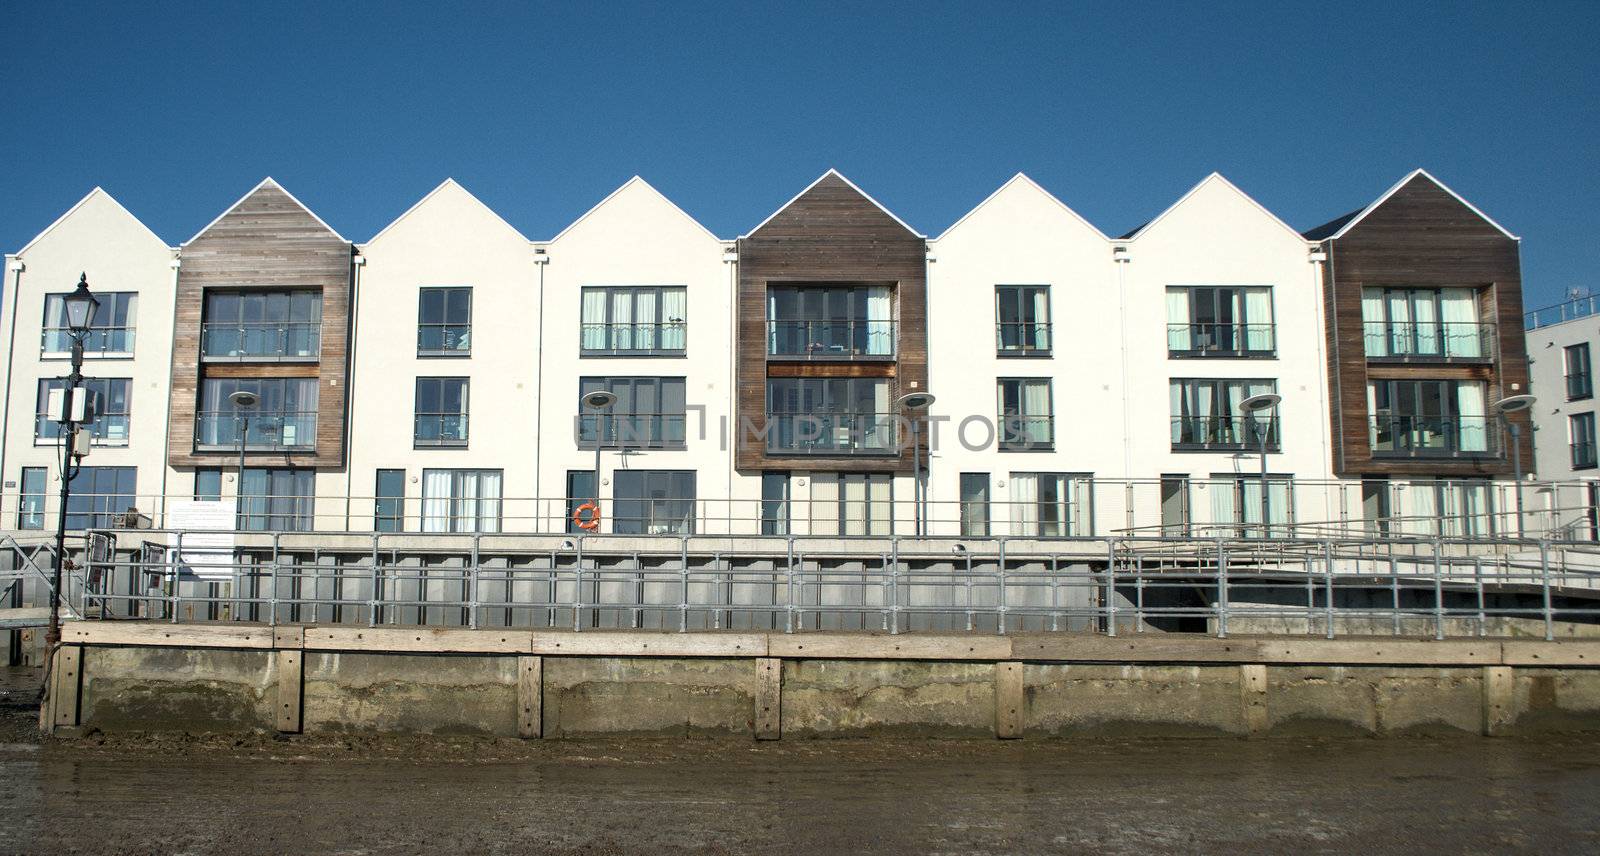 Modern riverside flats